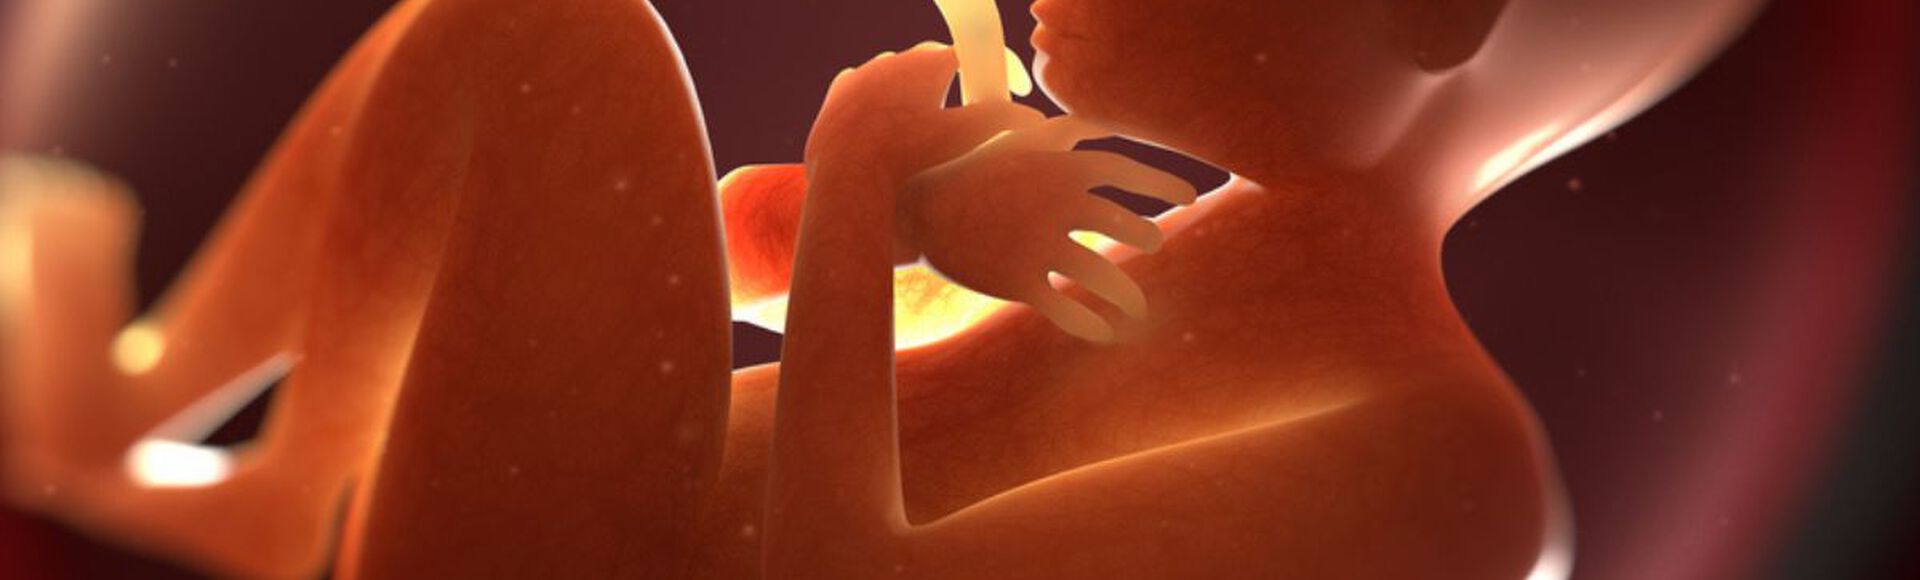 Ilustração de feto dentro da barriga